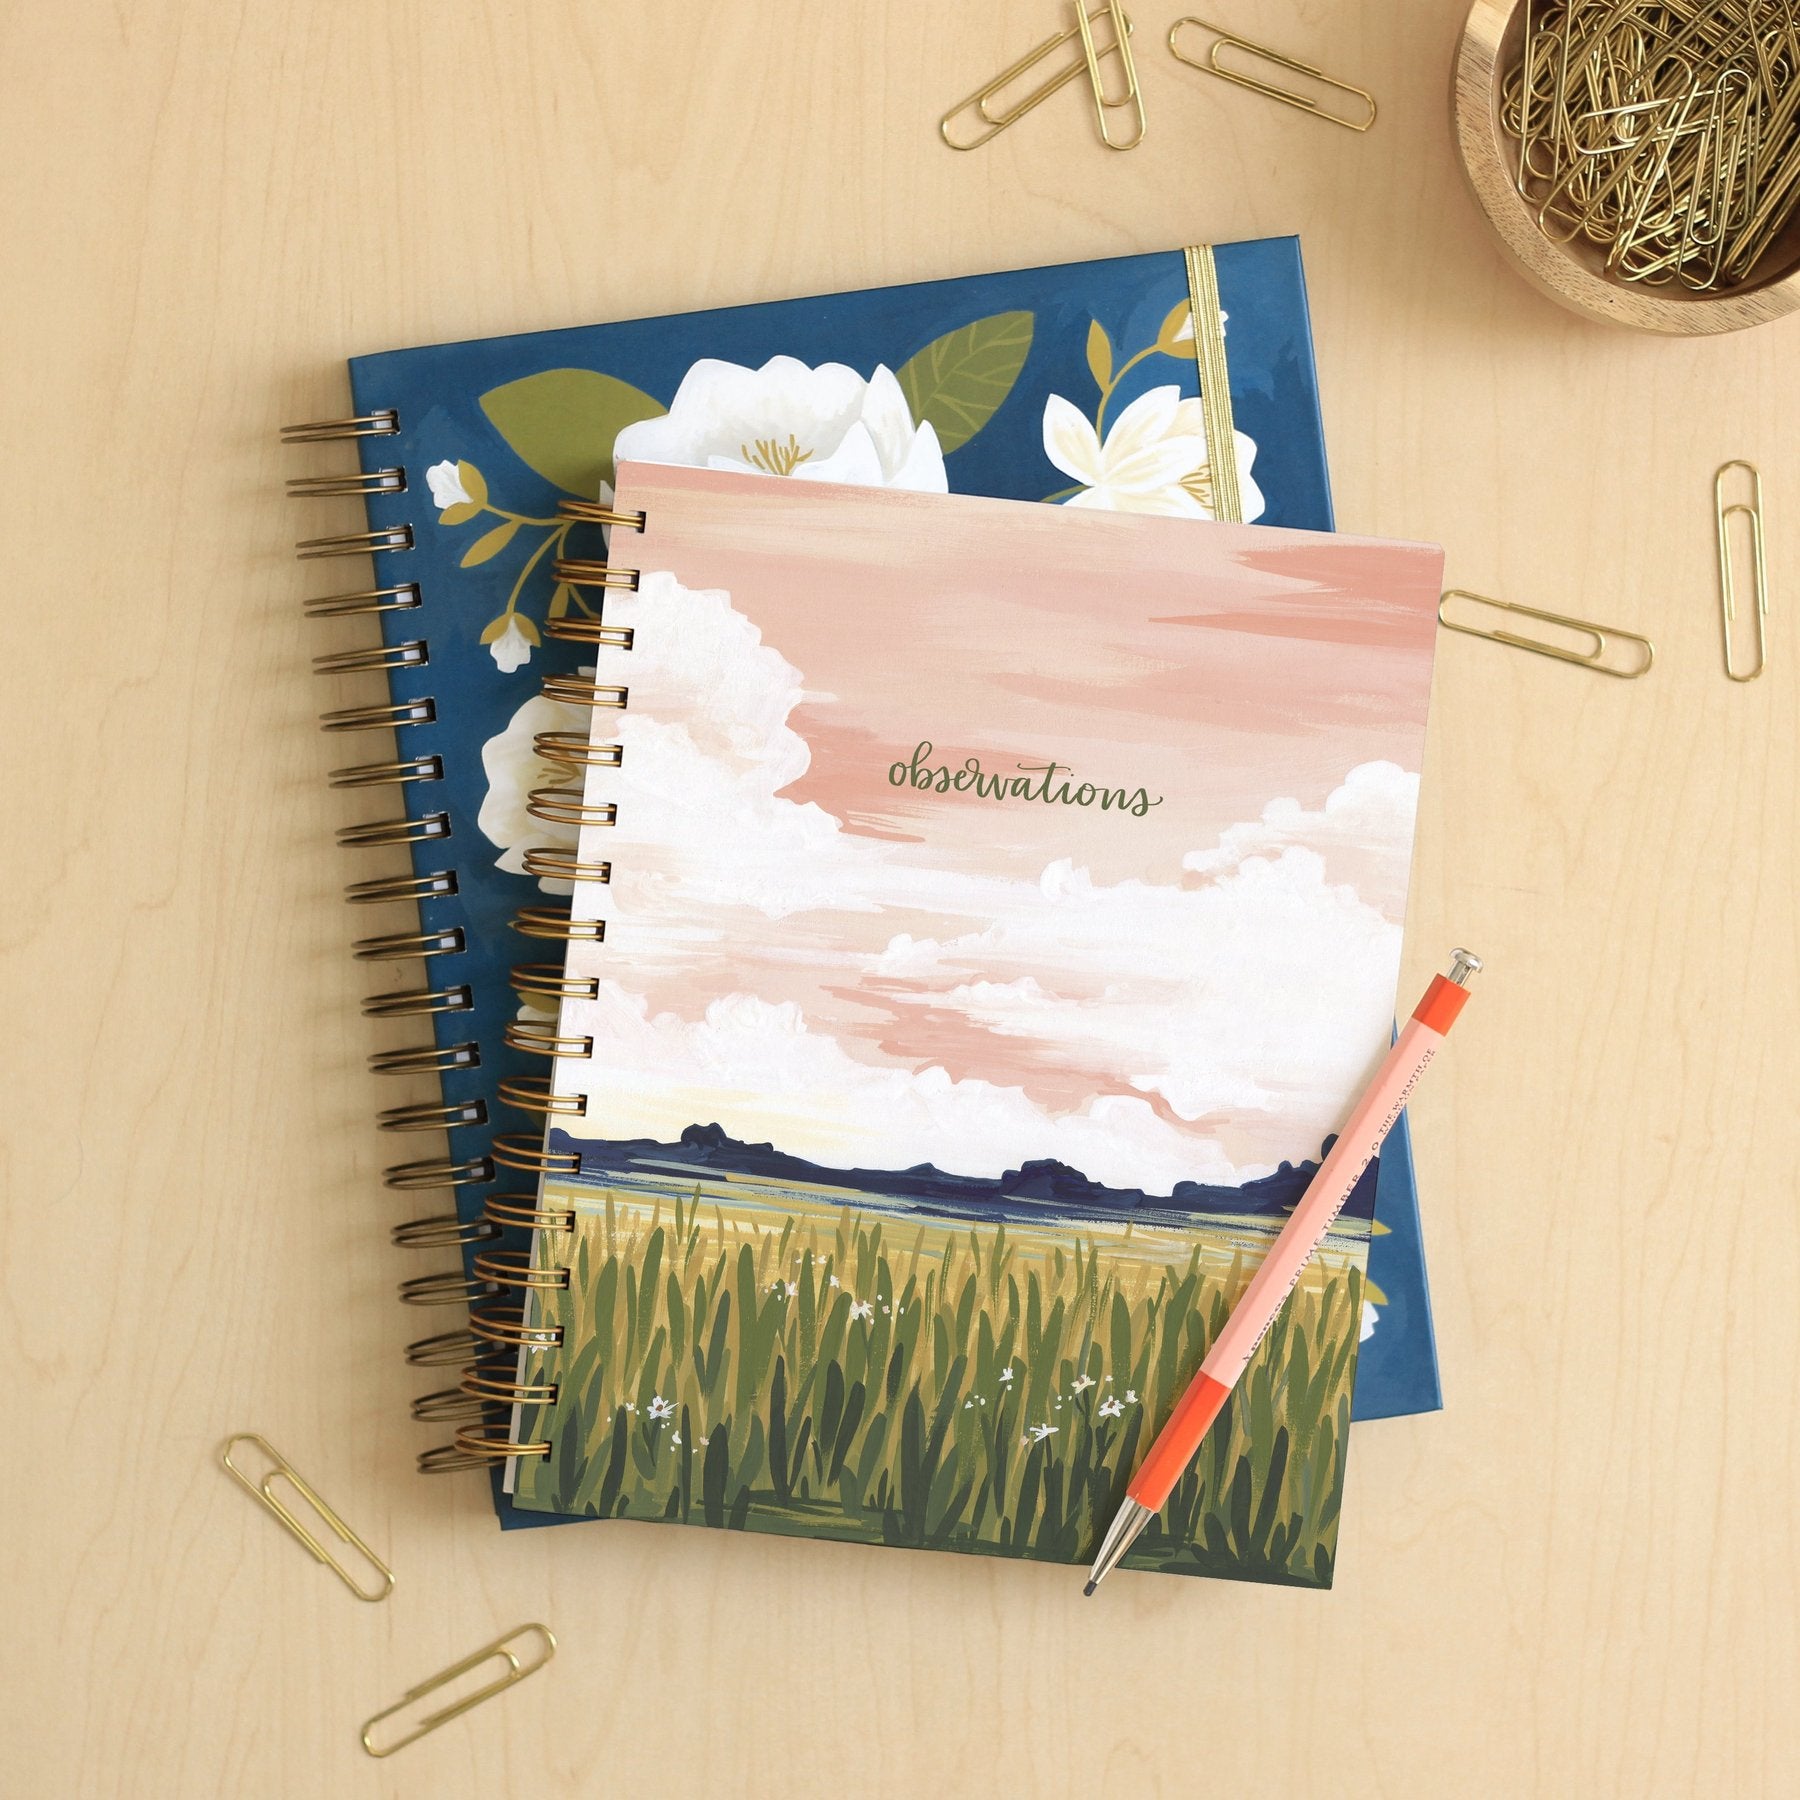 Goldenrod Landscape Spiral Notebook